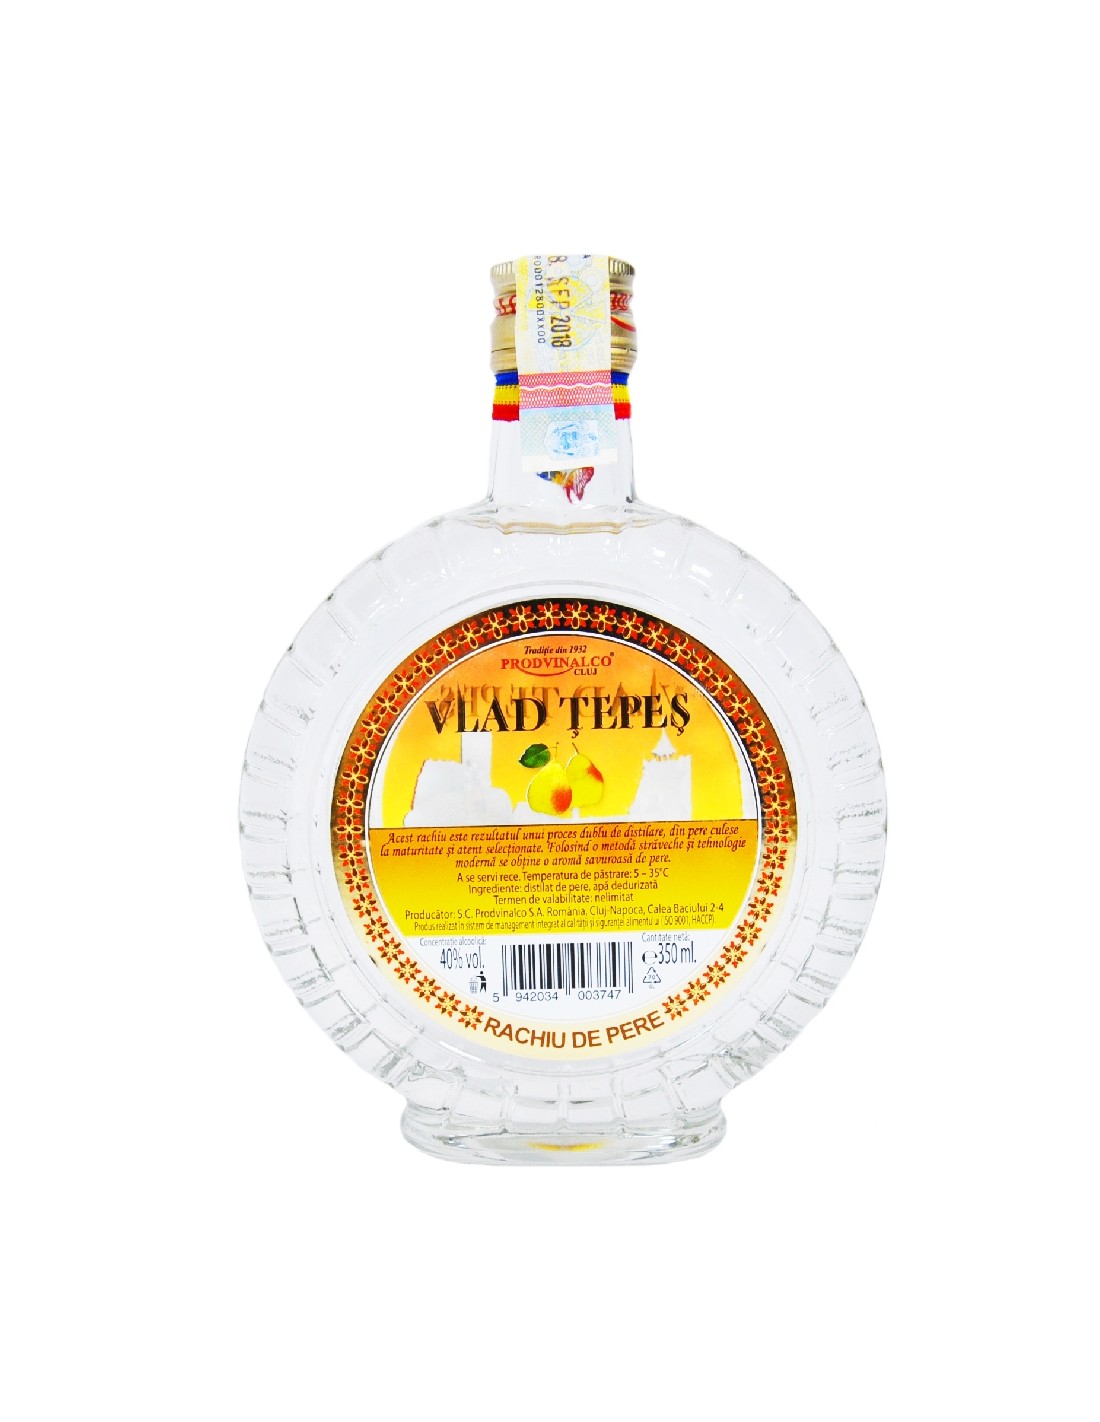 Rachiu de pere Vlad Tepes, 40% alc., 0.35L, Romania alcooldiscount.ro